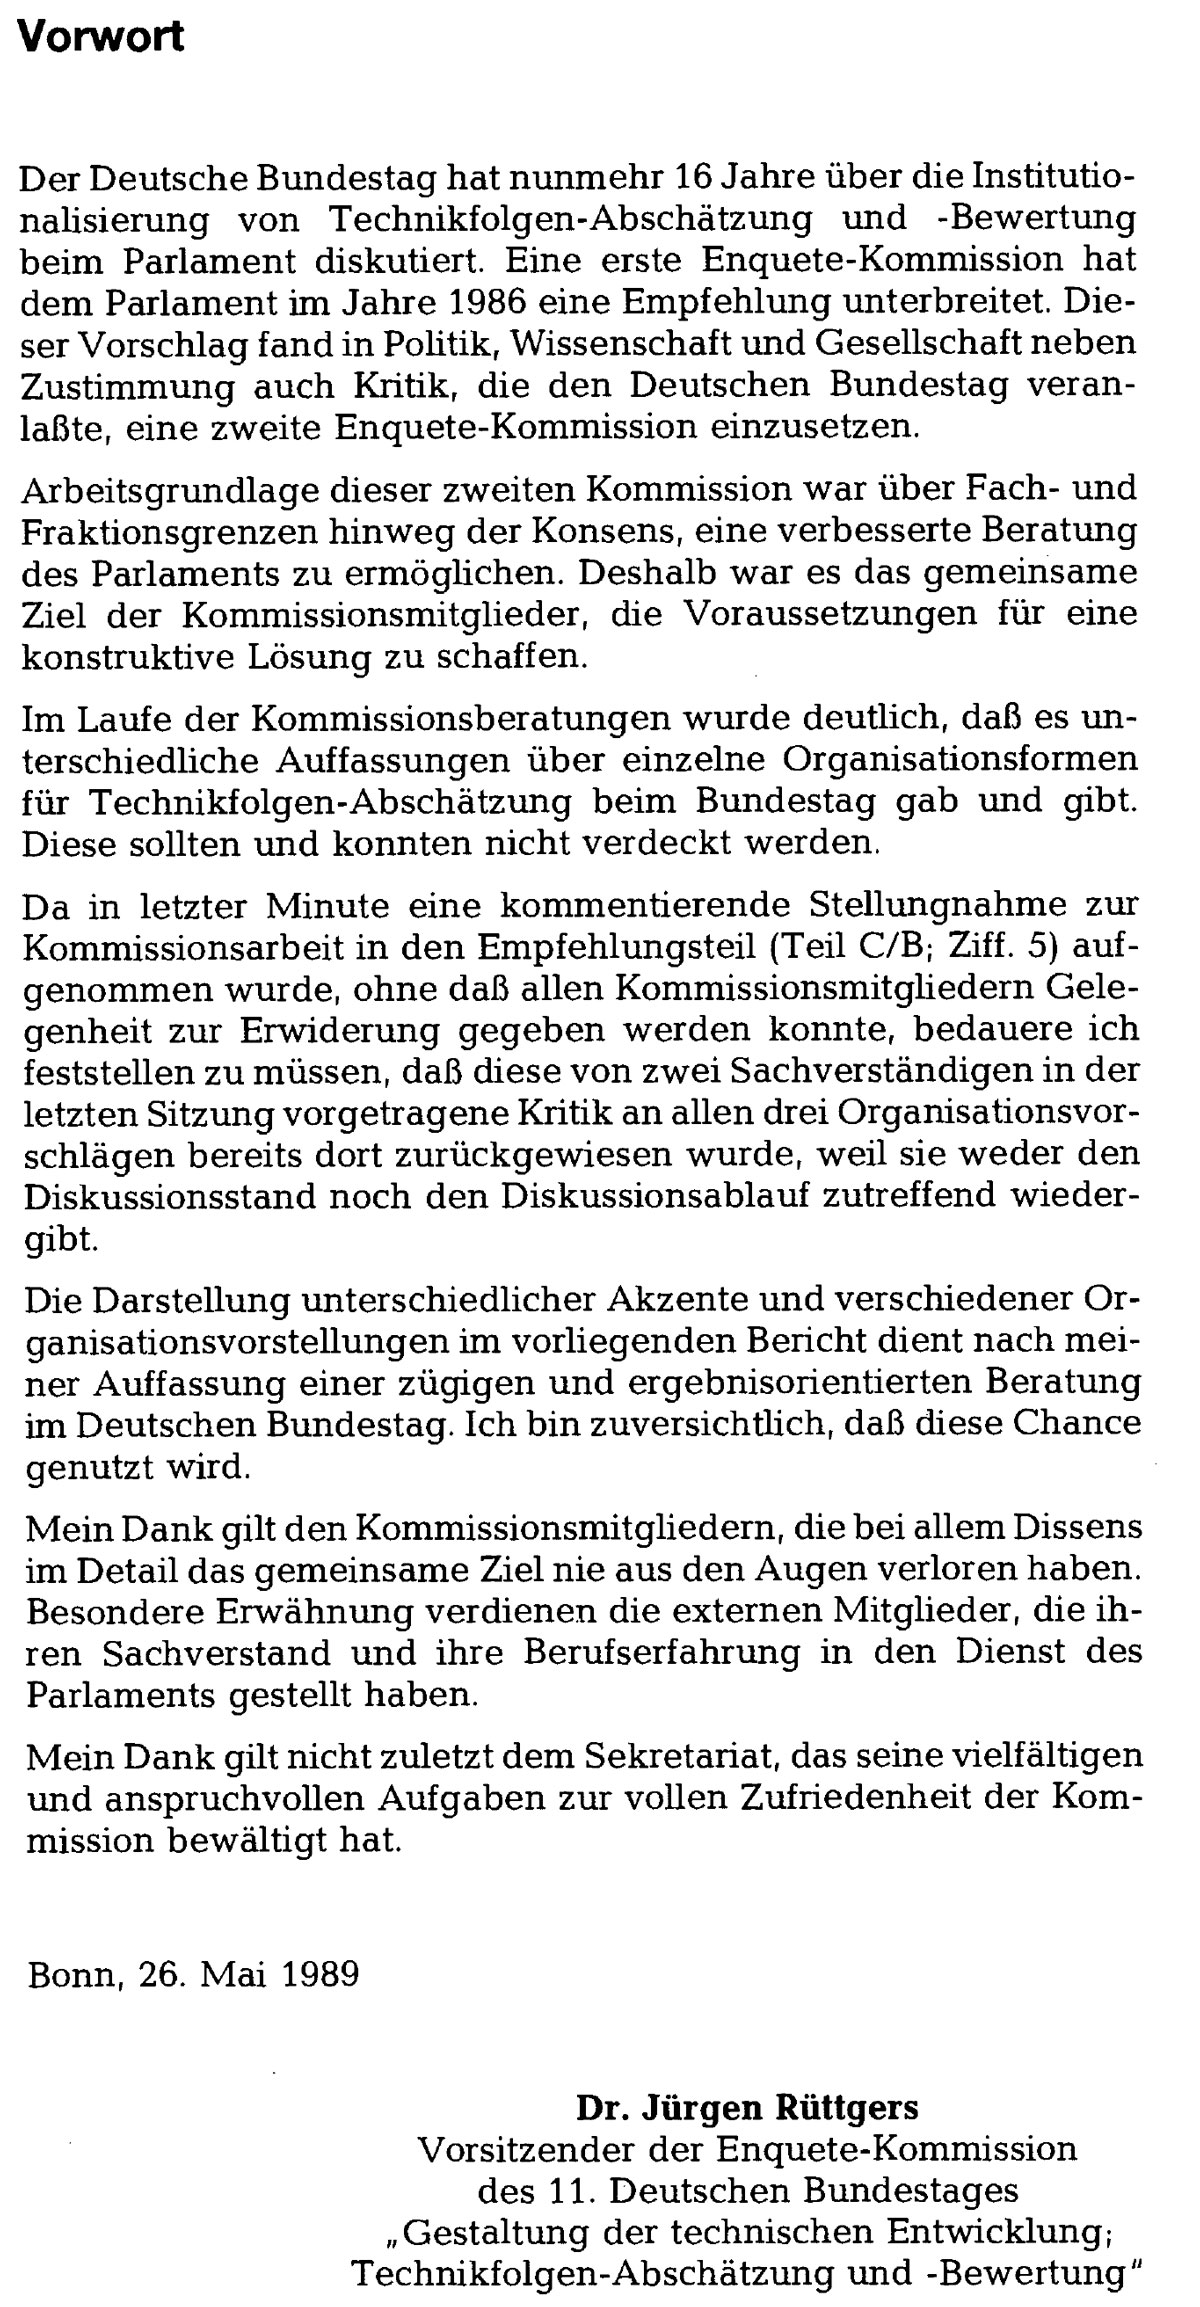 Screenshot des Vorworts von Jürgen Rüttgers, CDU,  zum Abschlussbericht der Enquete-Kommission TA vom April 1989 (Drs. 11/4606)